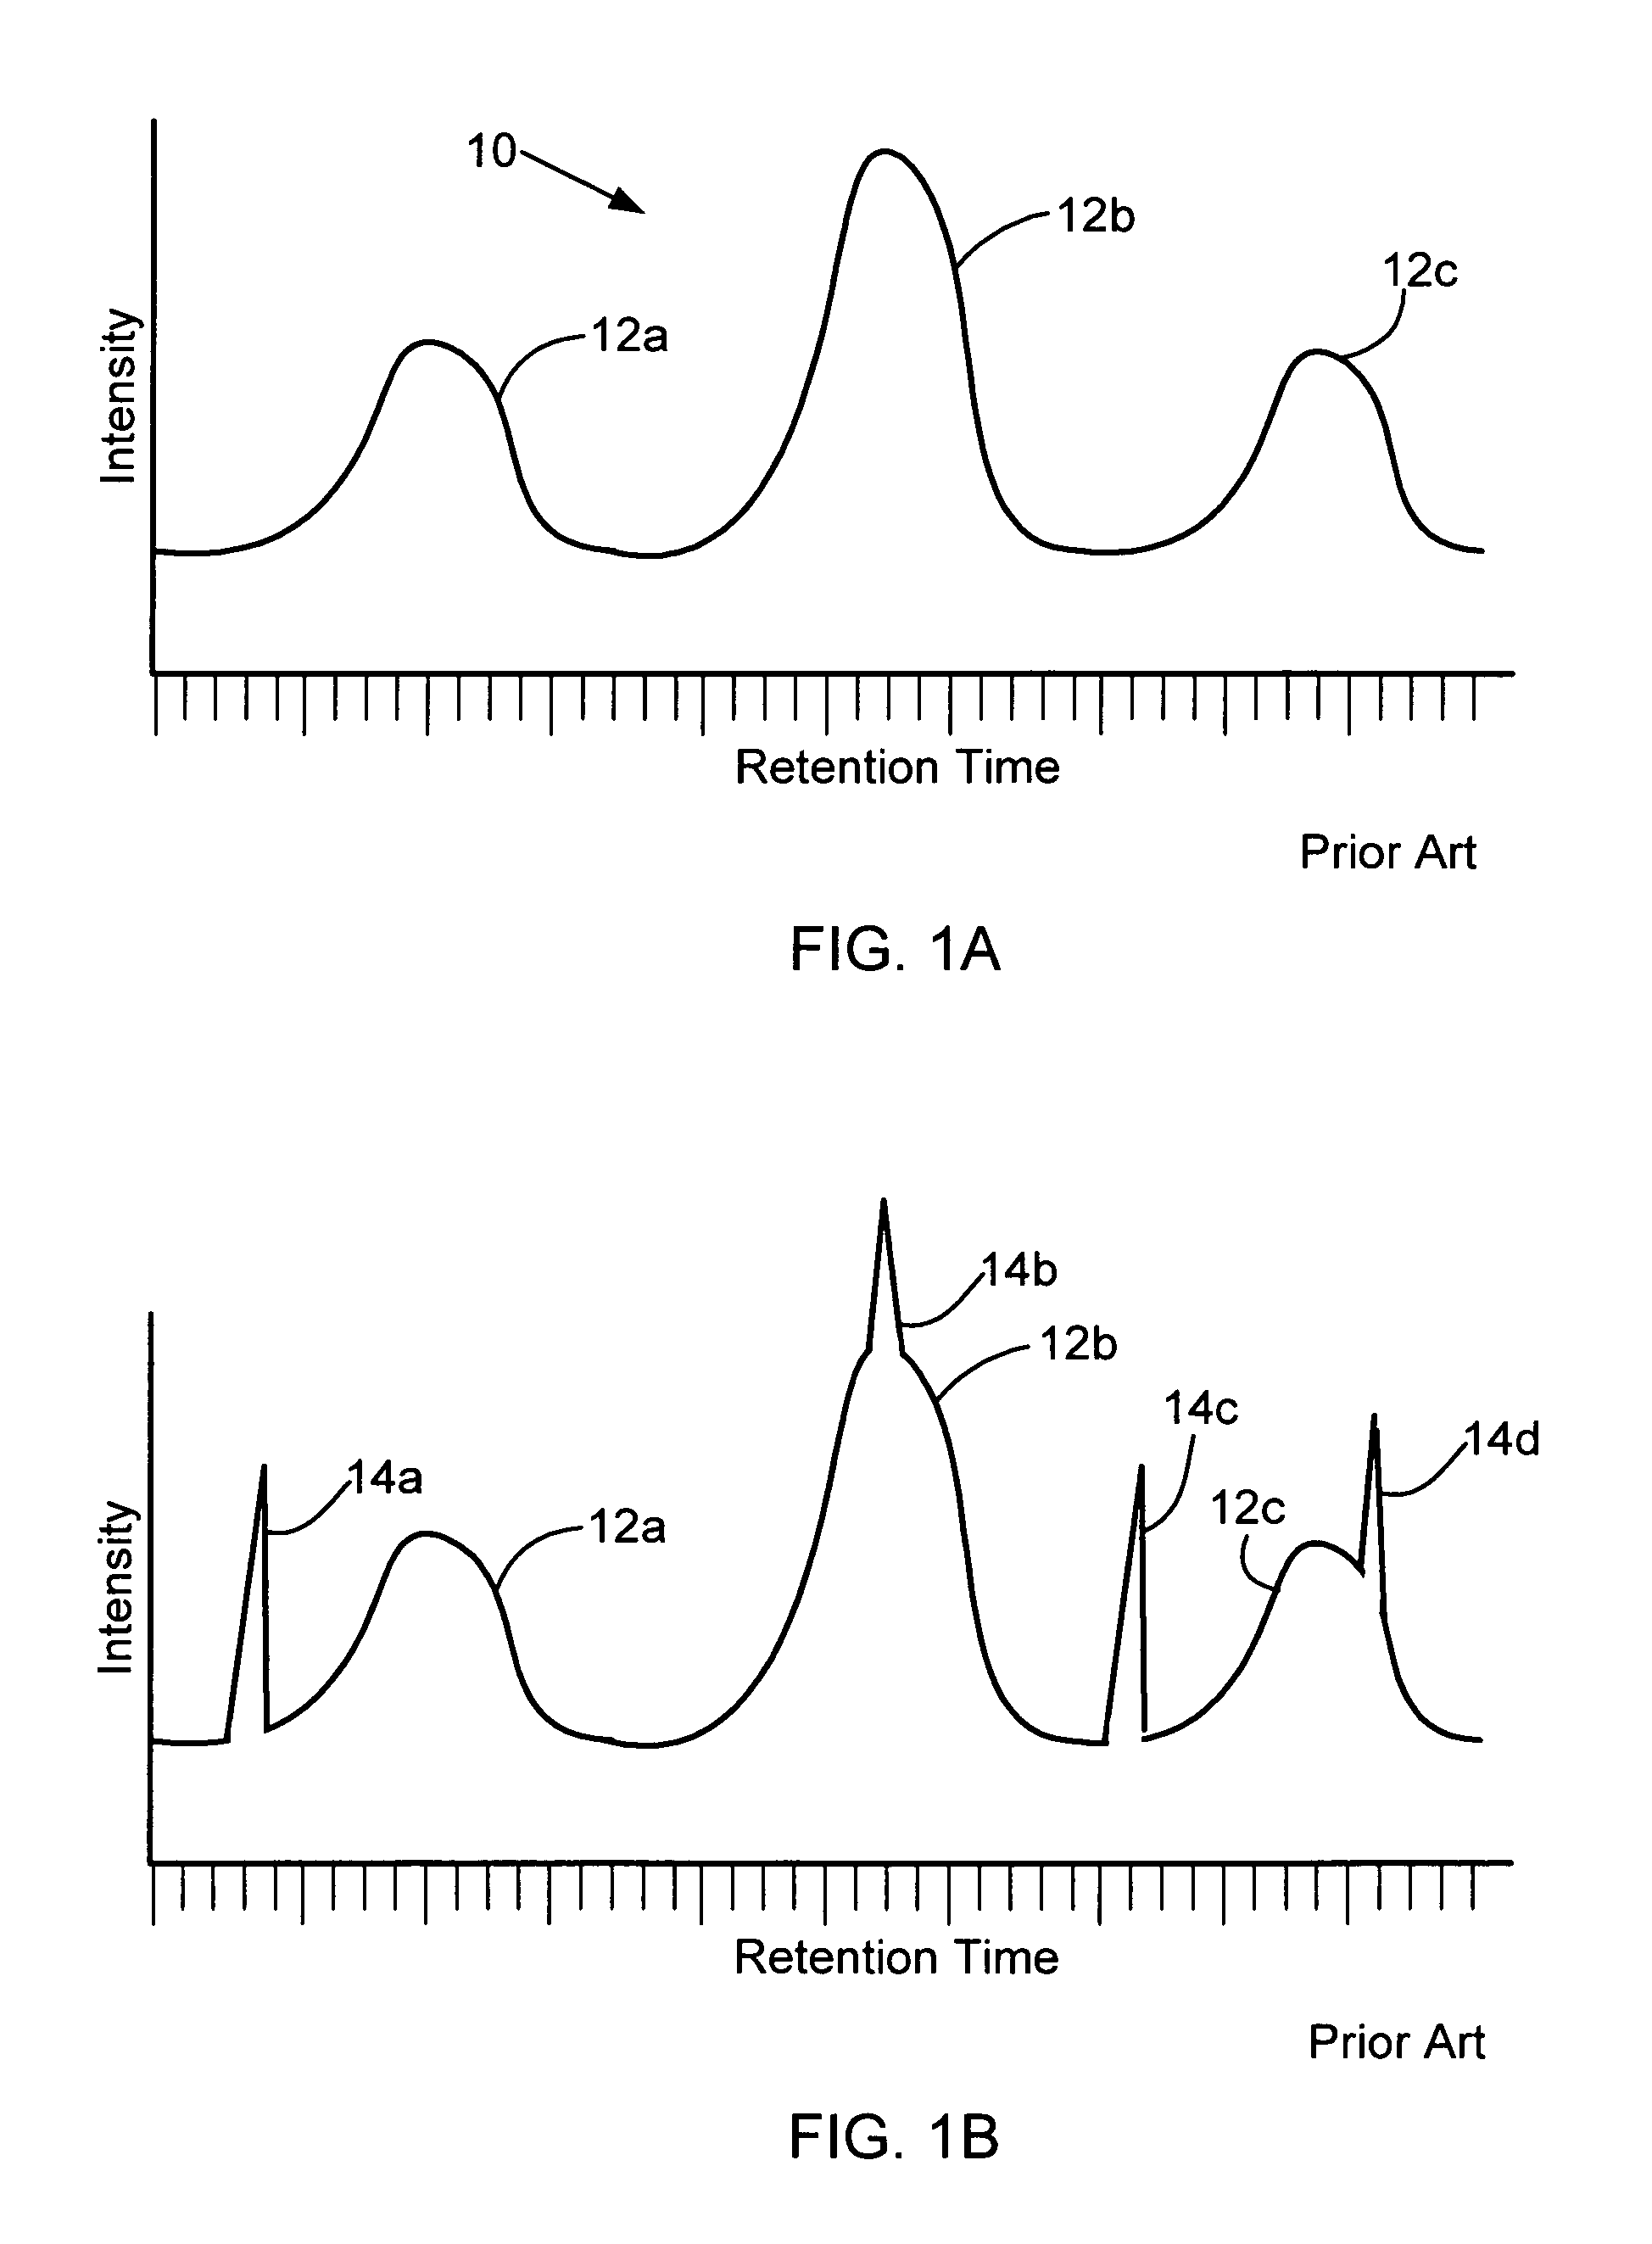 Median filter for liquid chromatography-mass spectrometry data